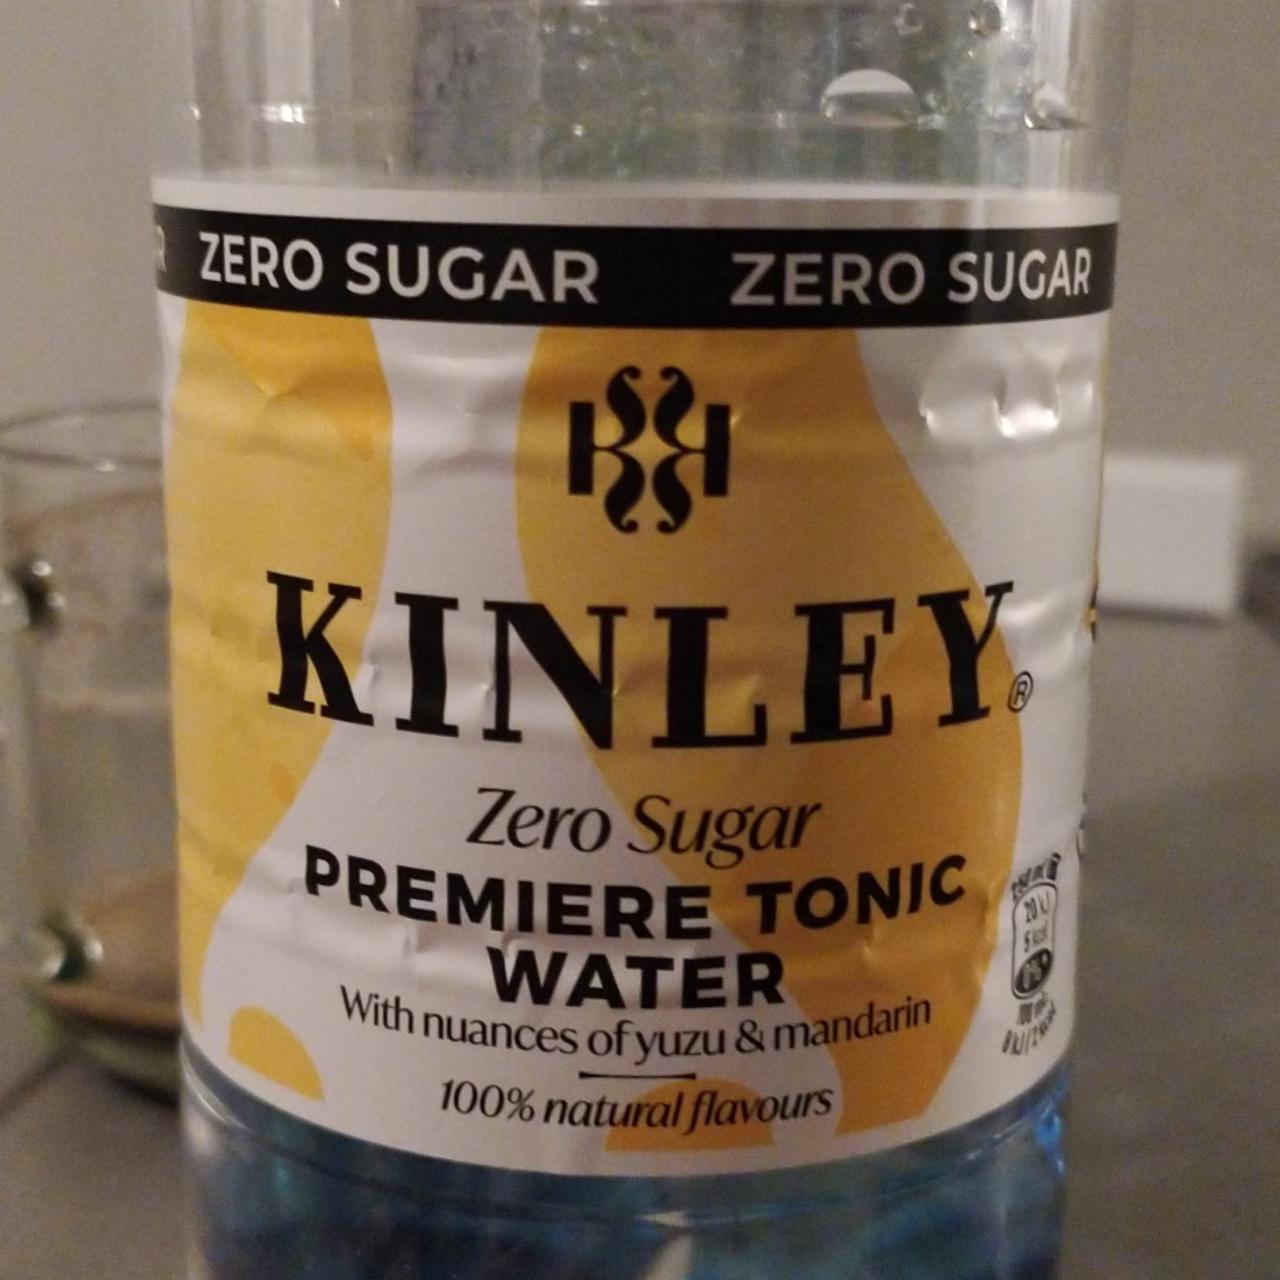 Zdjęcia - Premiere Tonic Water Napój gazowany Kinley